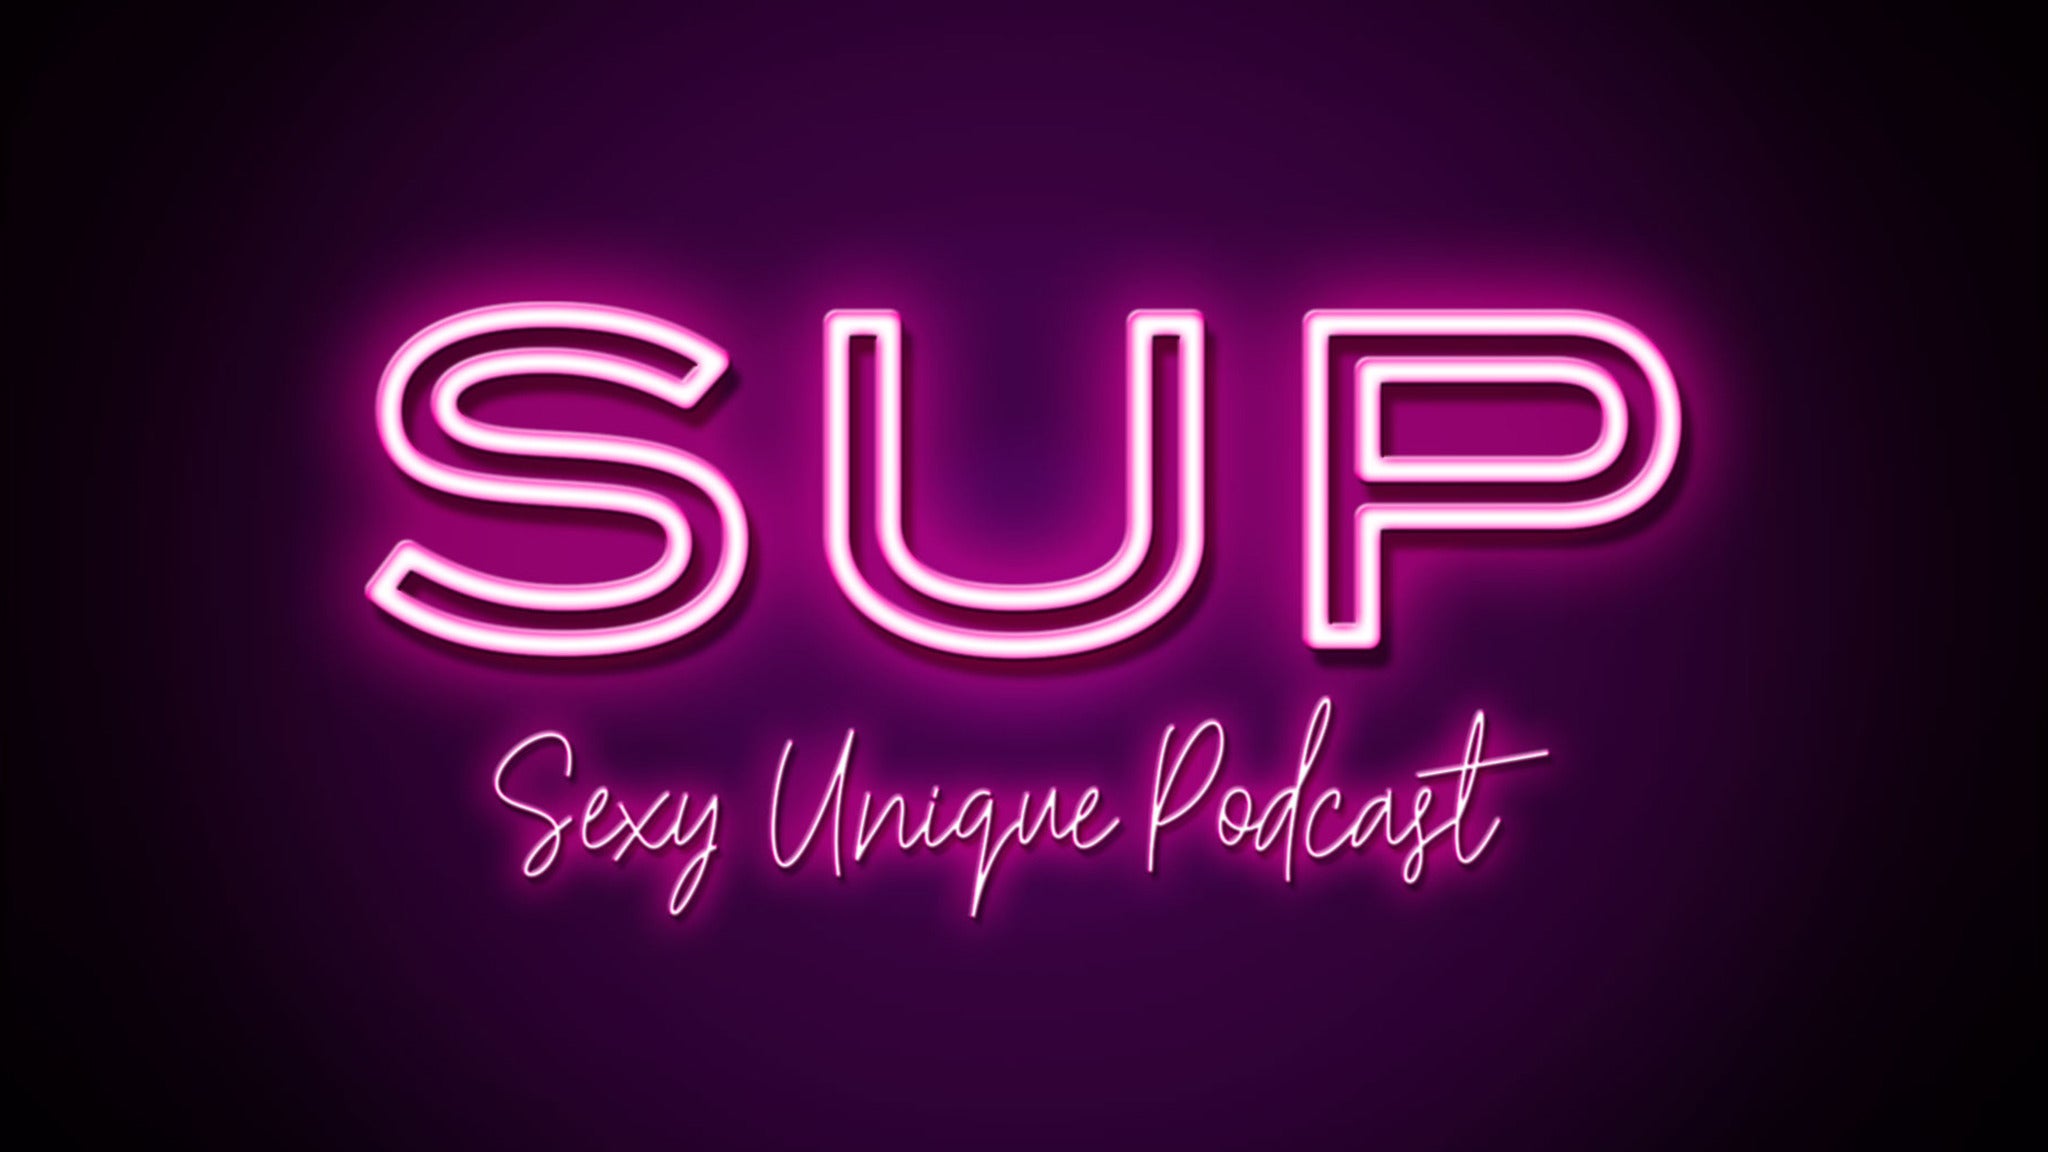 Sexy Unique Podcast pre-sale password